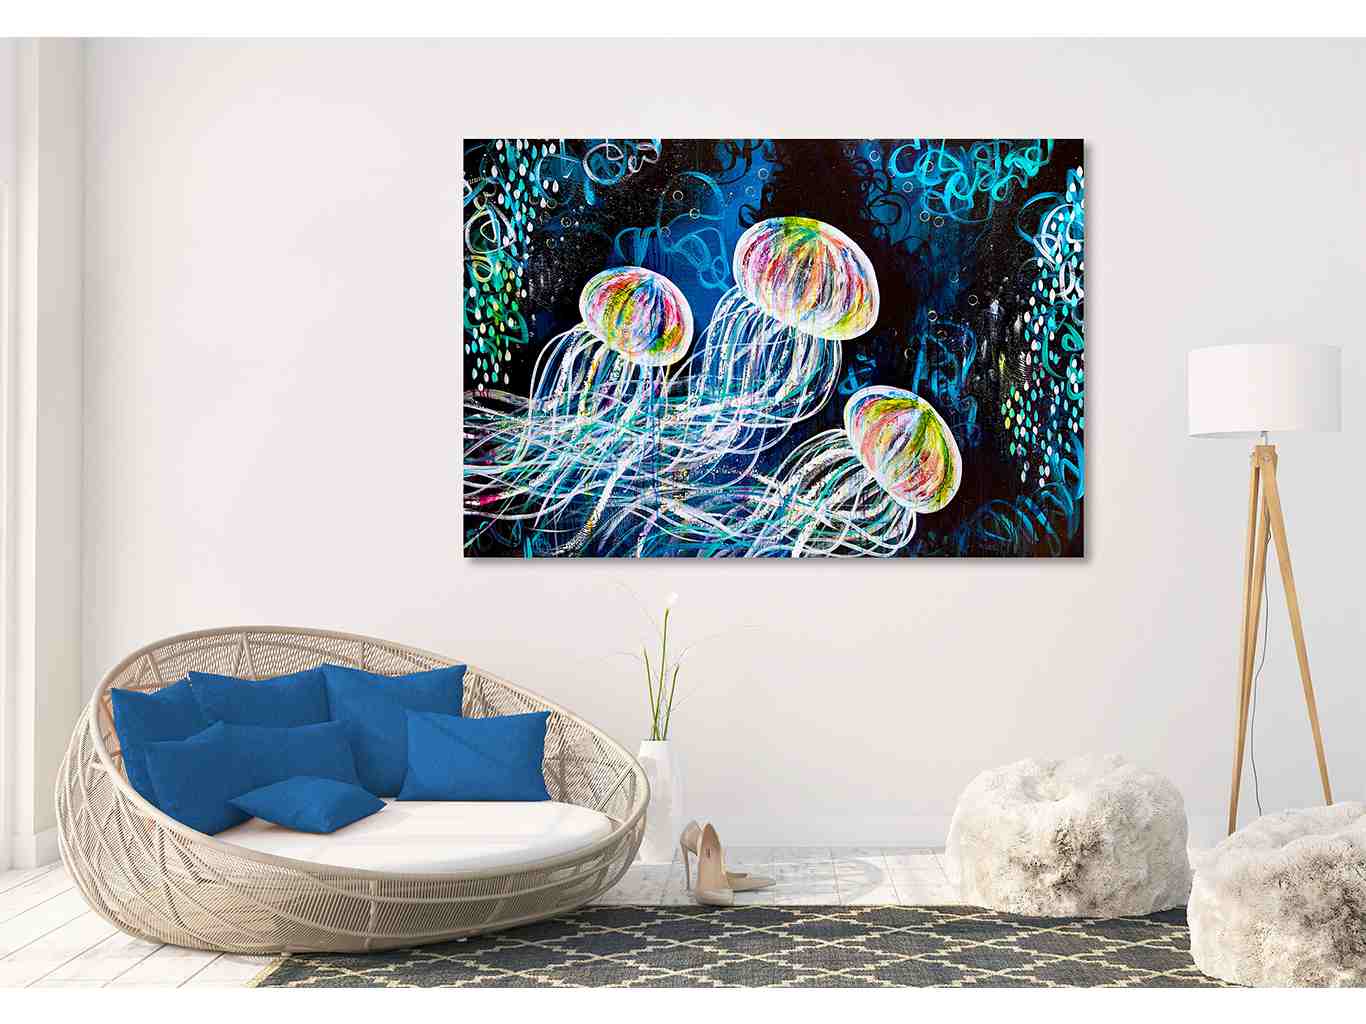 AM 111 Medusas II - acrylic - painting - canvas - ocean - jellyfishes - medusas - colorful - art - décor - wall - art- audree marsolais (3)